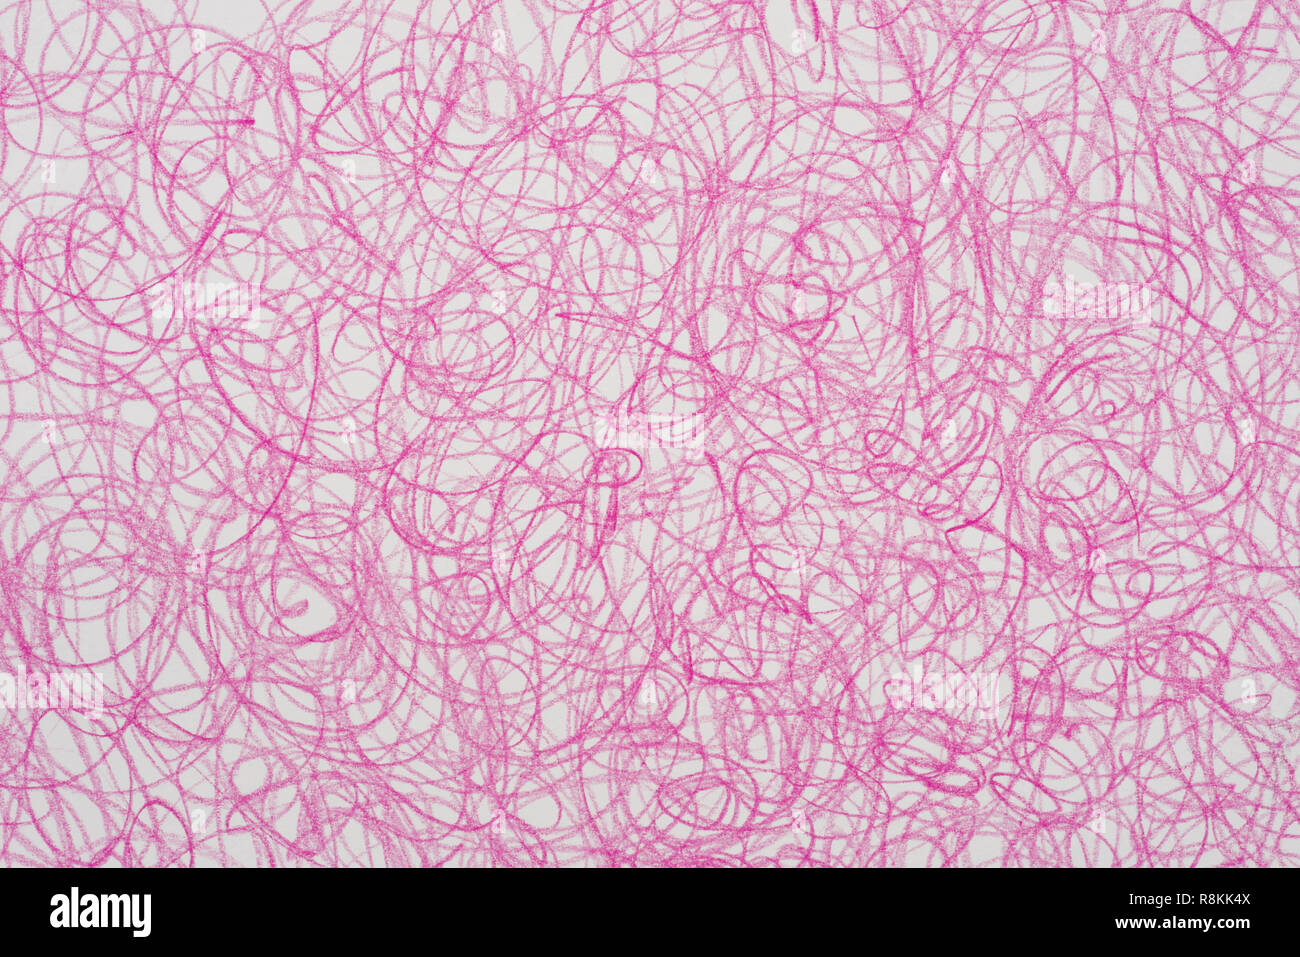 Crayon de couleur magenta texture de fond doodle Banque D'Images